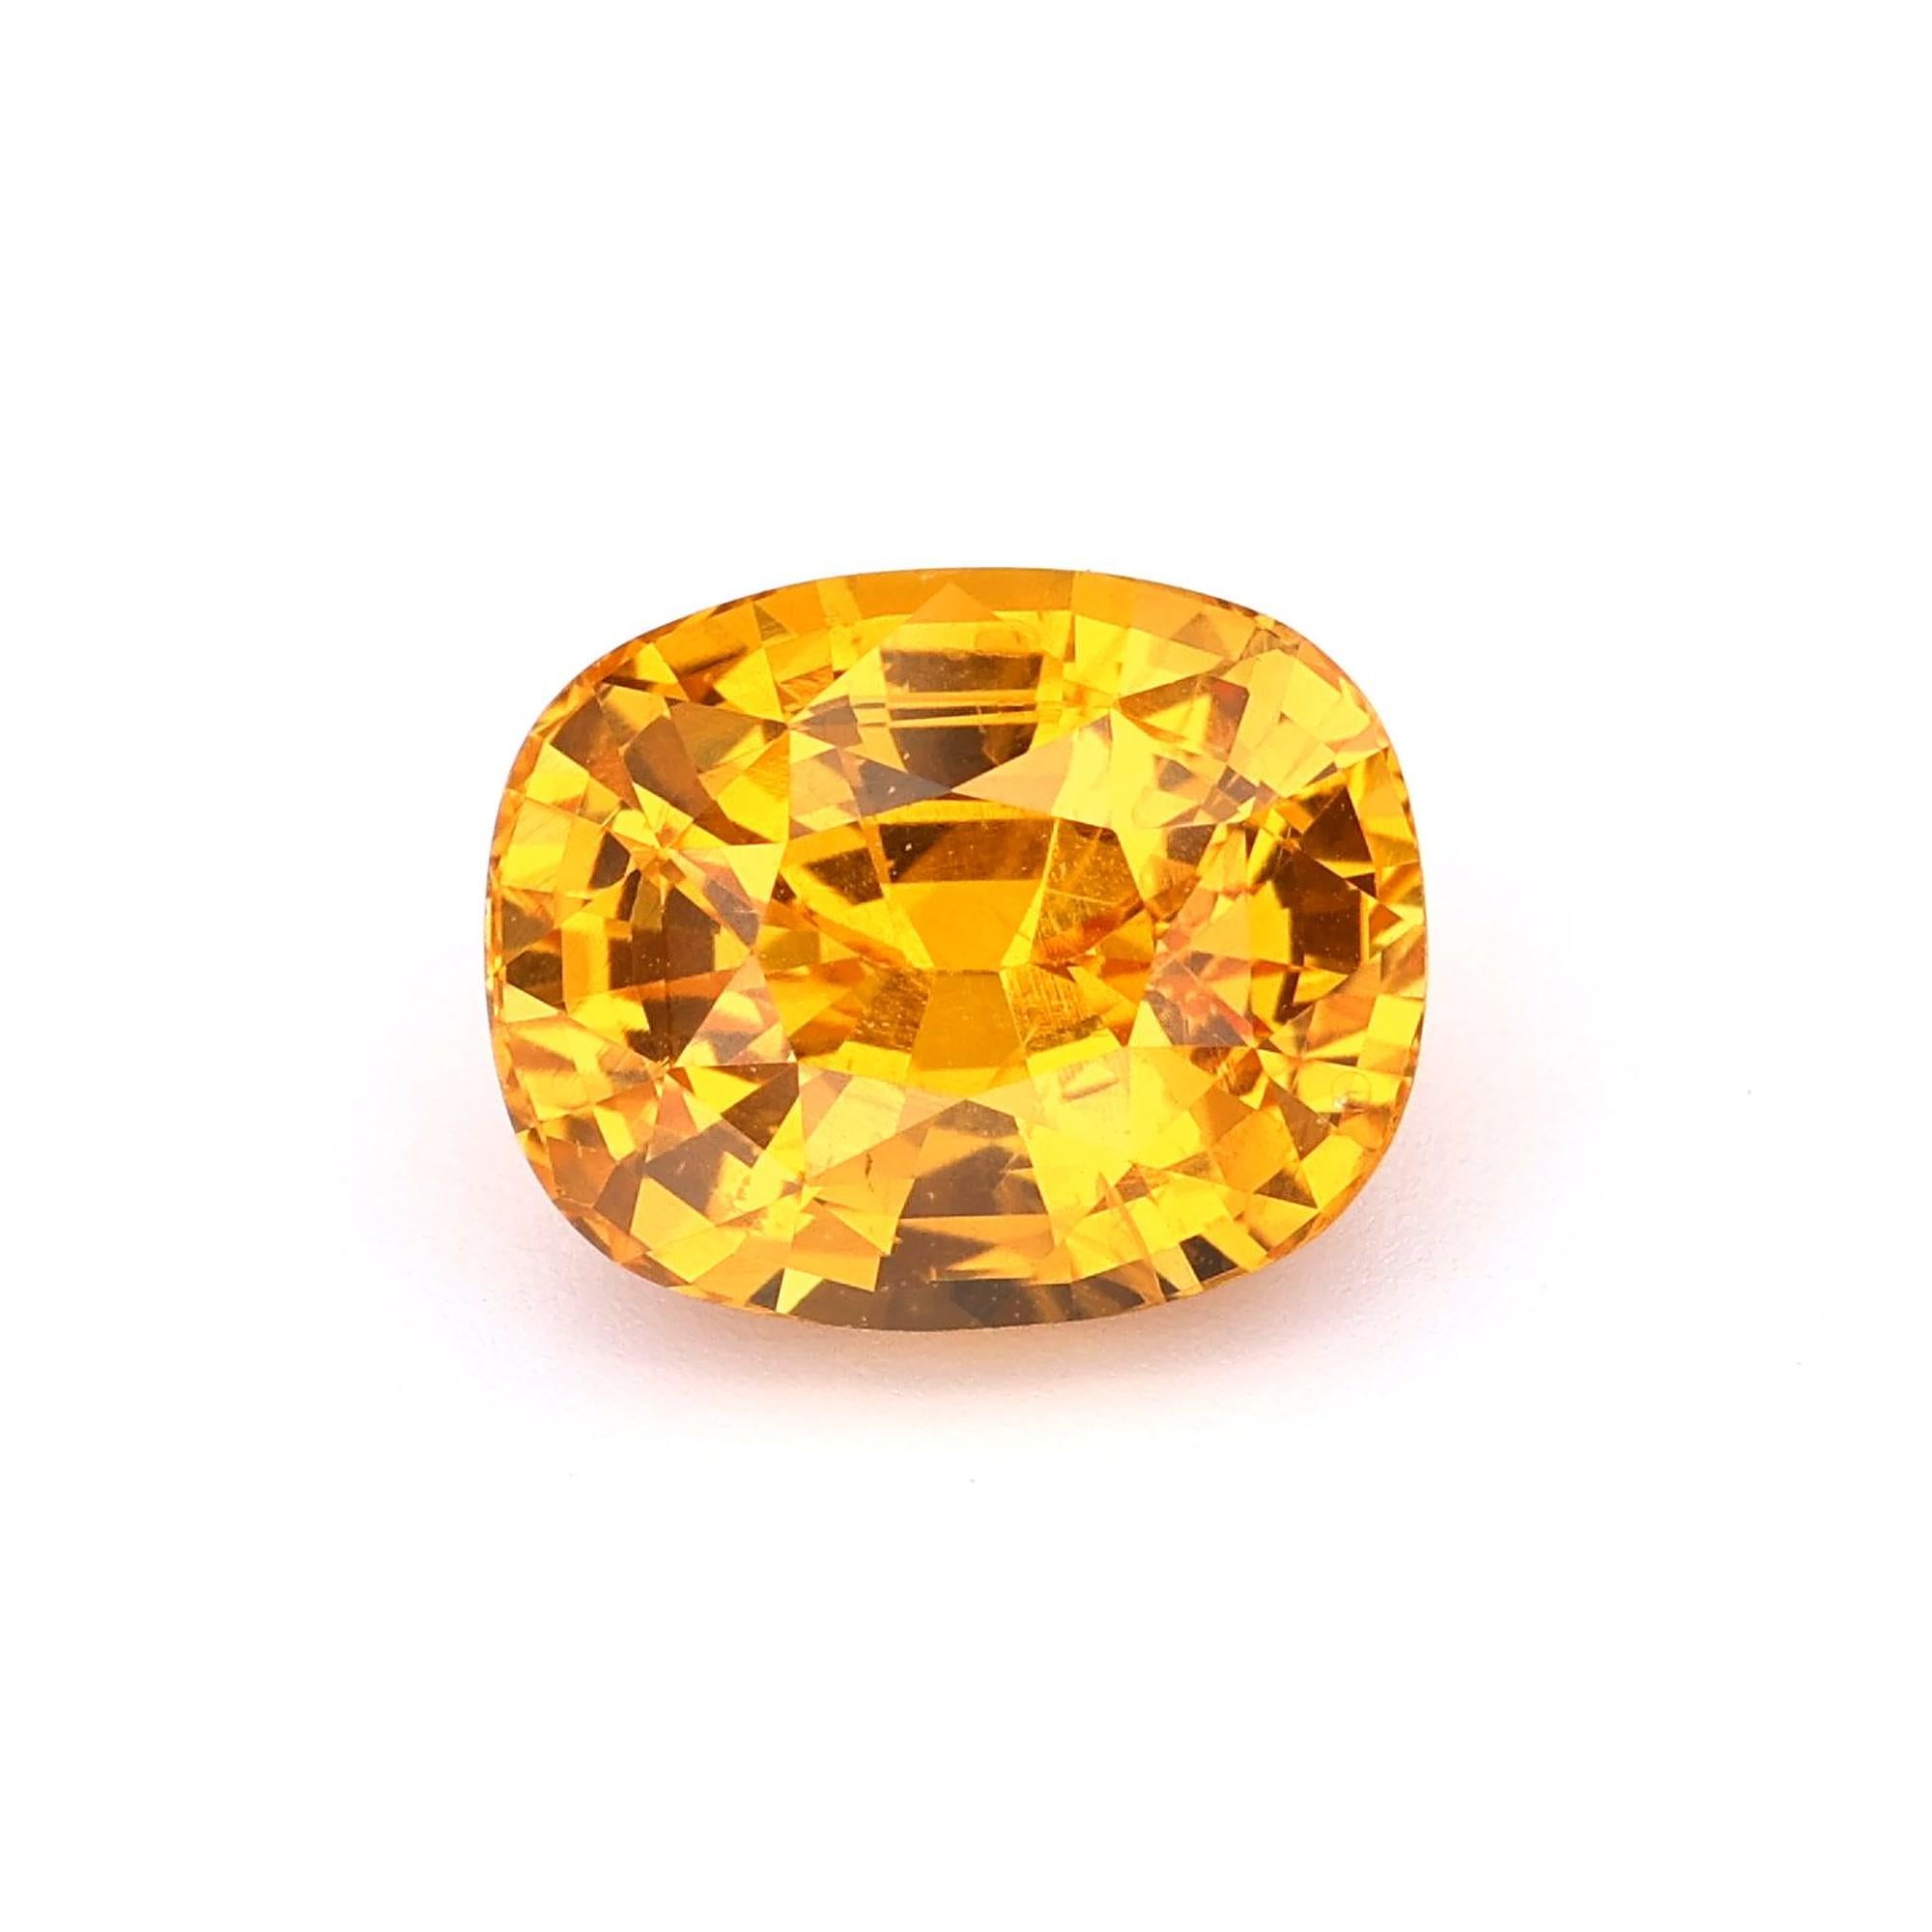 Natürlicher Gelber Saphir Kissenform Edelstein, Dieser exquisite Edelstein stammt aus Ceylon (Sri Lanka), bekannt für die Herstellung von Steinen außergewöhnlicher Qualität. Mit seiner innerlich makellosen Klarheit.

- • Sorte: Gelber Saphir 
- •